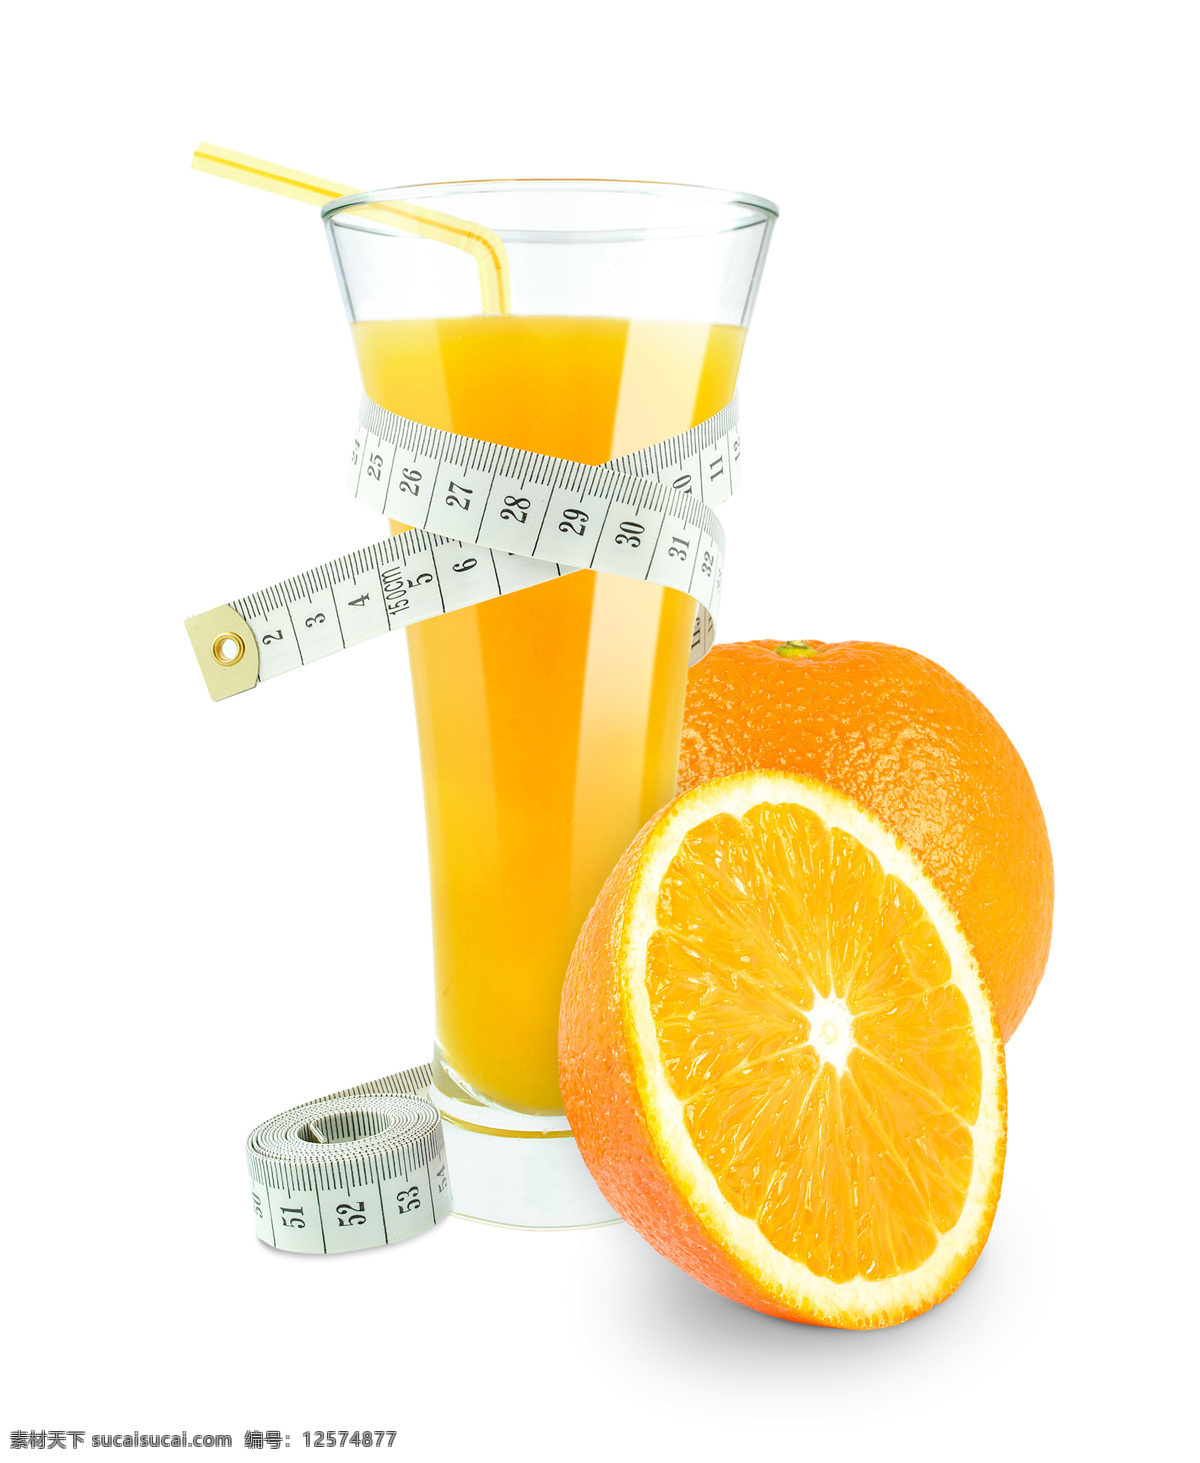 美味 果汁 减肥 橙子 柠檬 新鲜果汁 新鲜水果 饮料 减肥果汁 酒类图片 餐饮美食